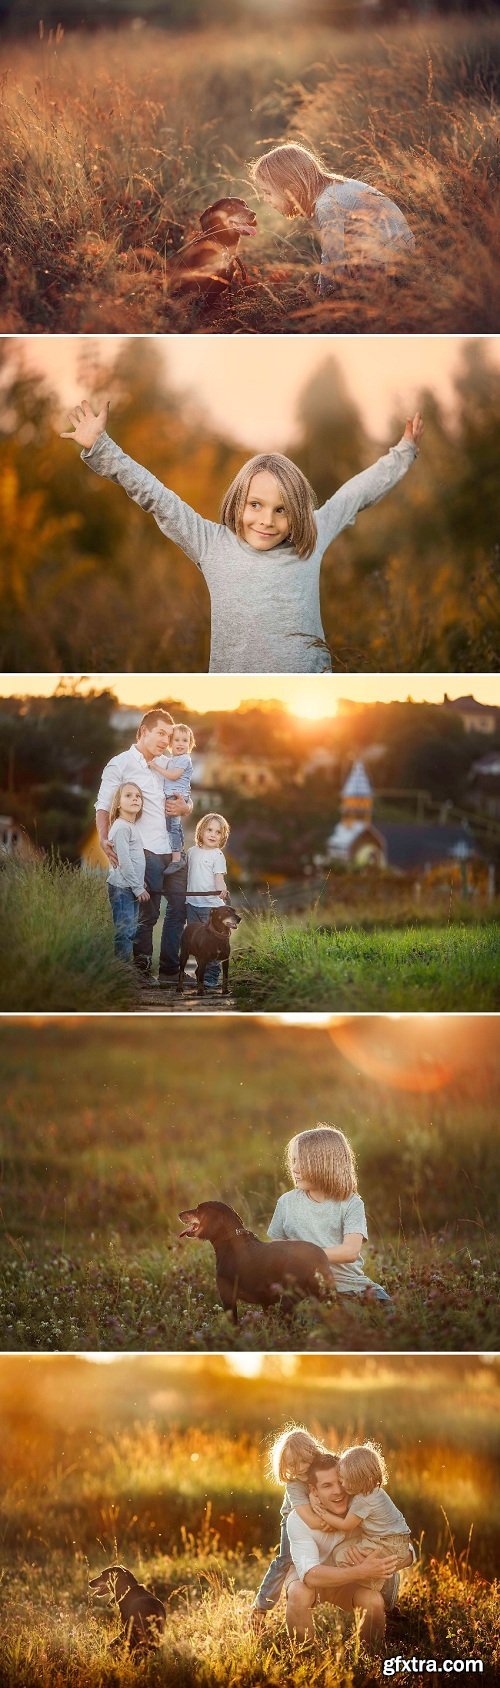 Anastasia Kutchina - Family and Children\'s Photography